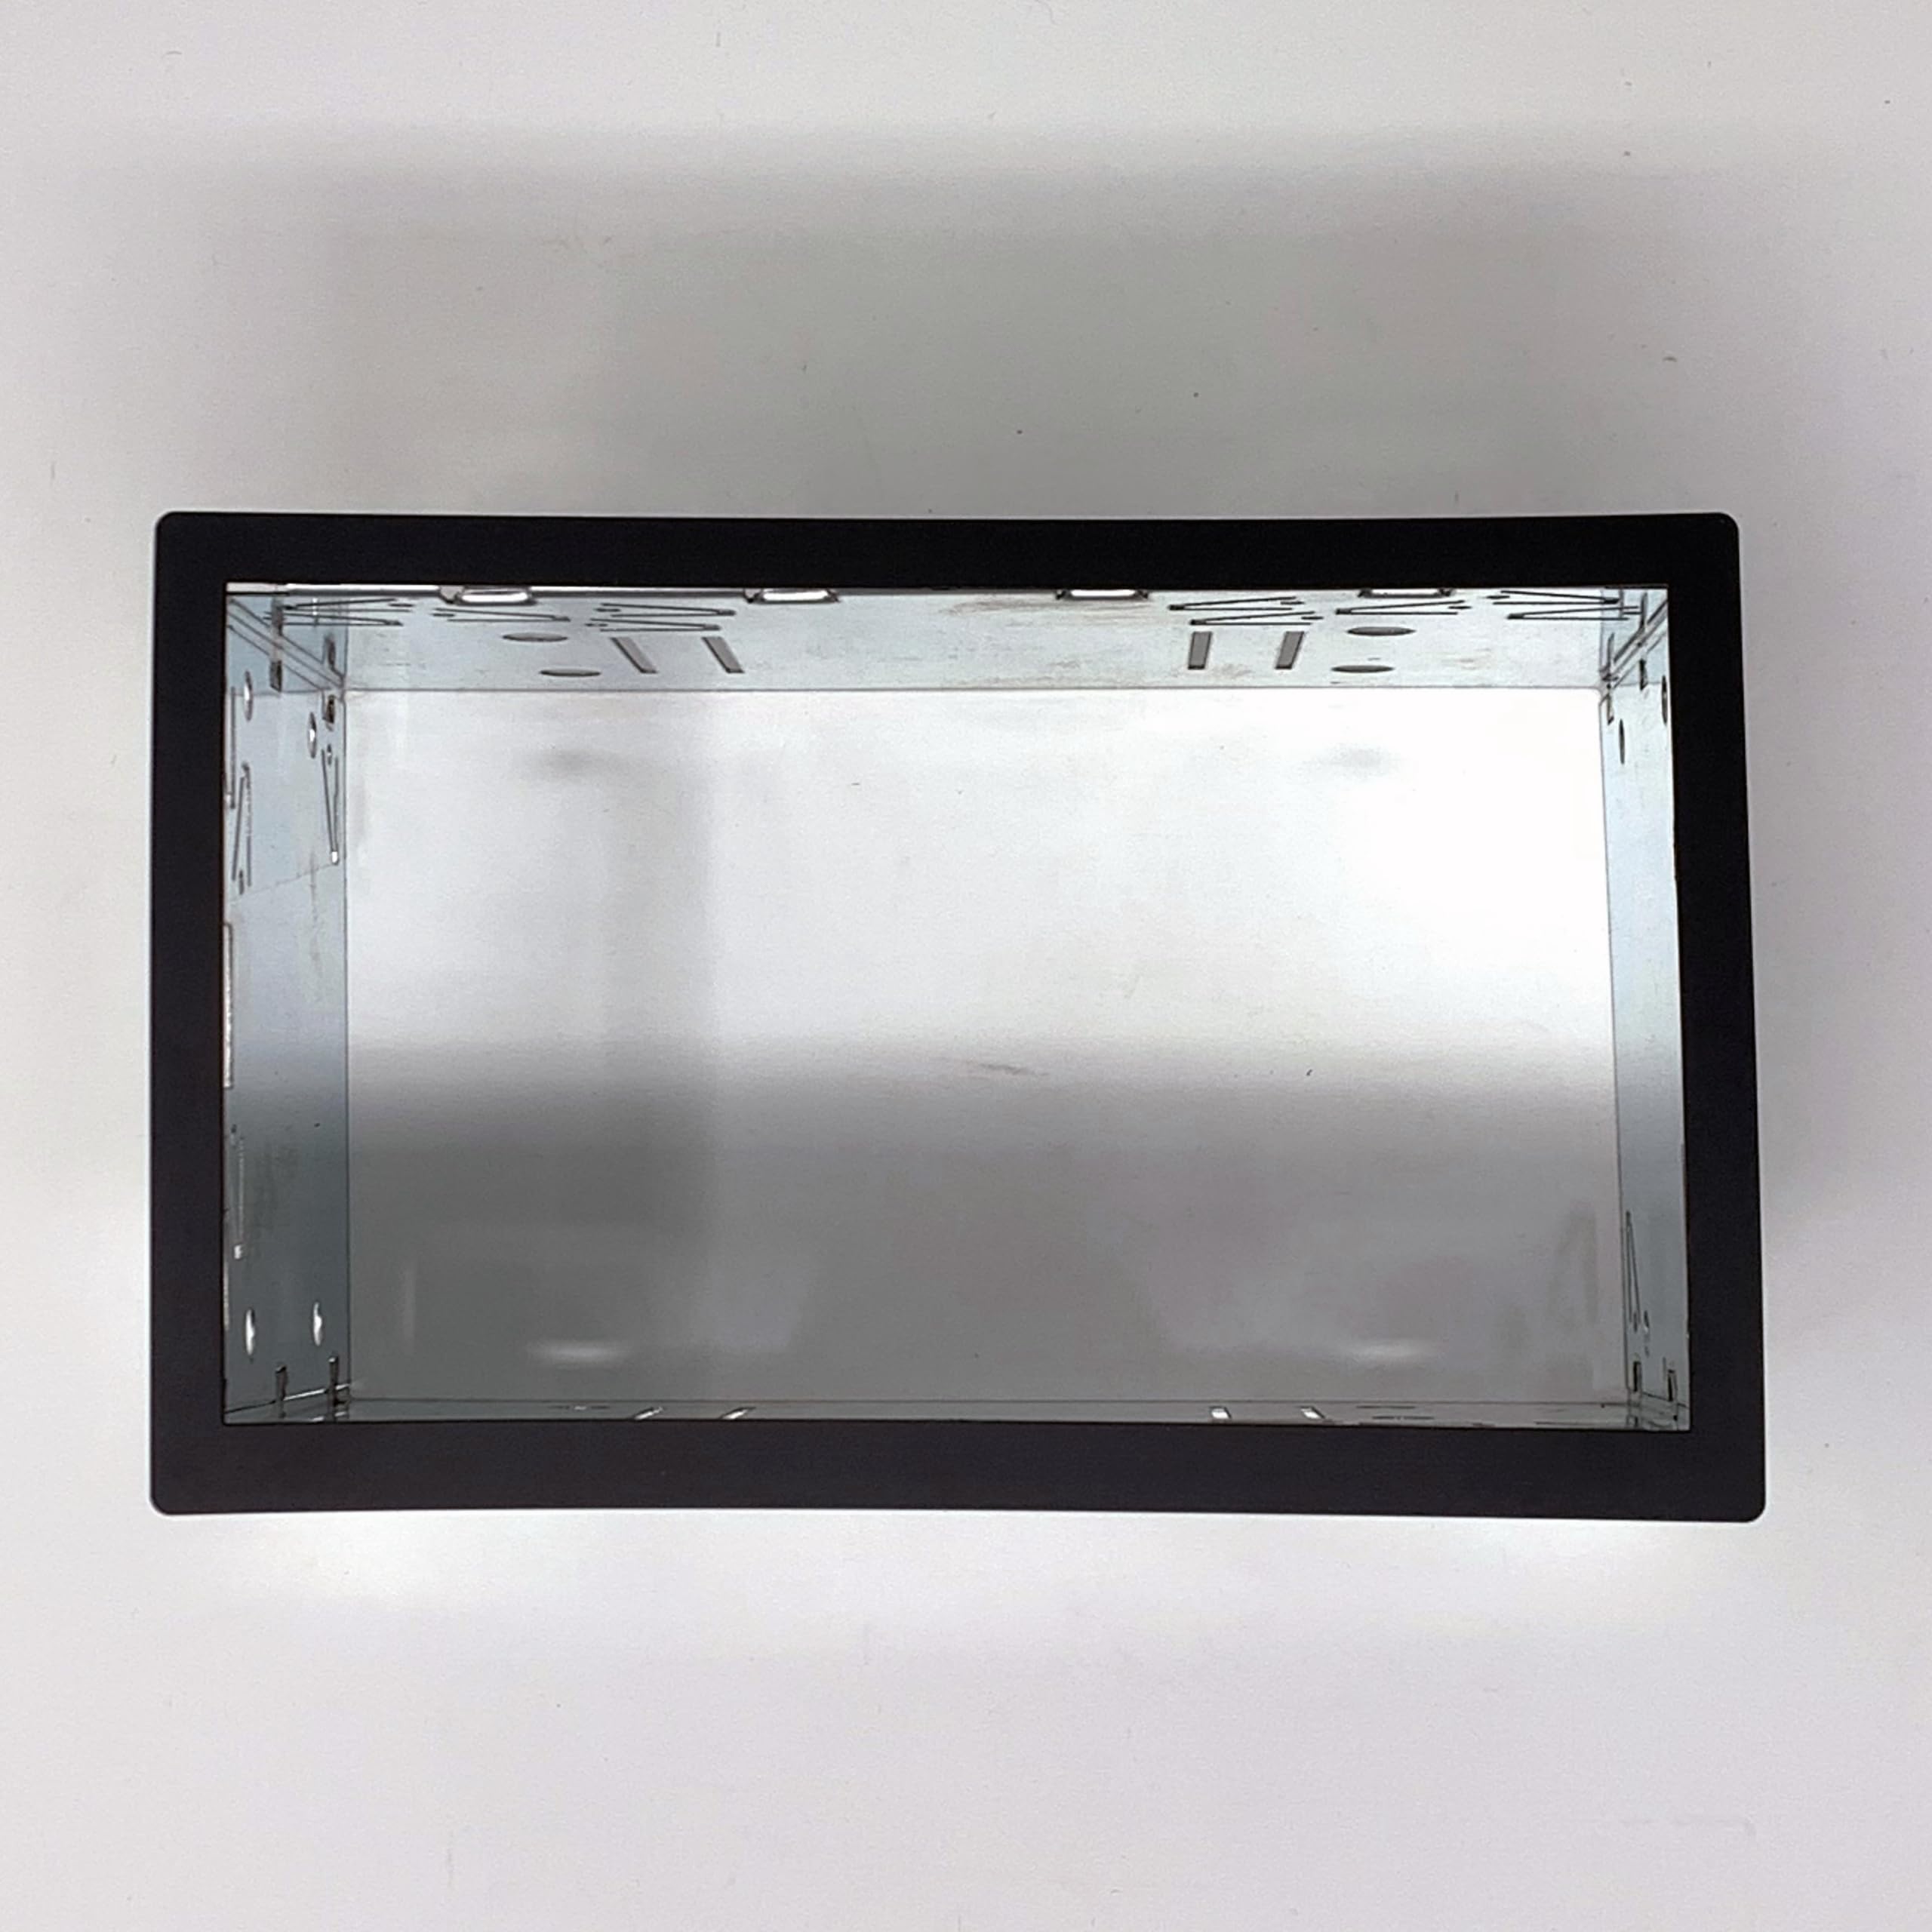 Baseline Connect Rahmen für Doppel ISO 24430.2, 186,5 x 116,5mm, schwarz